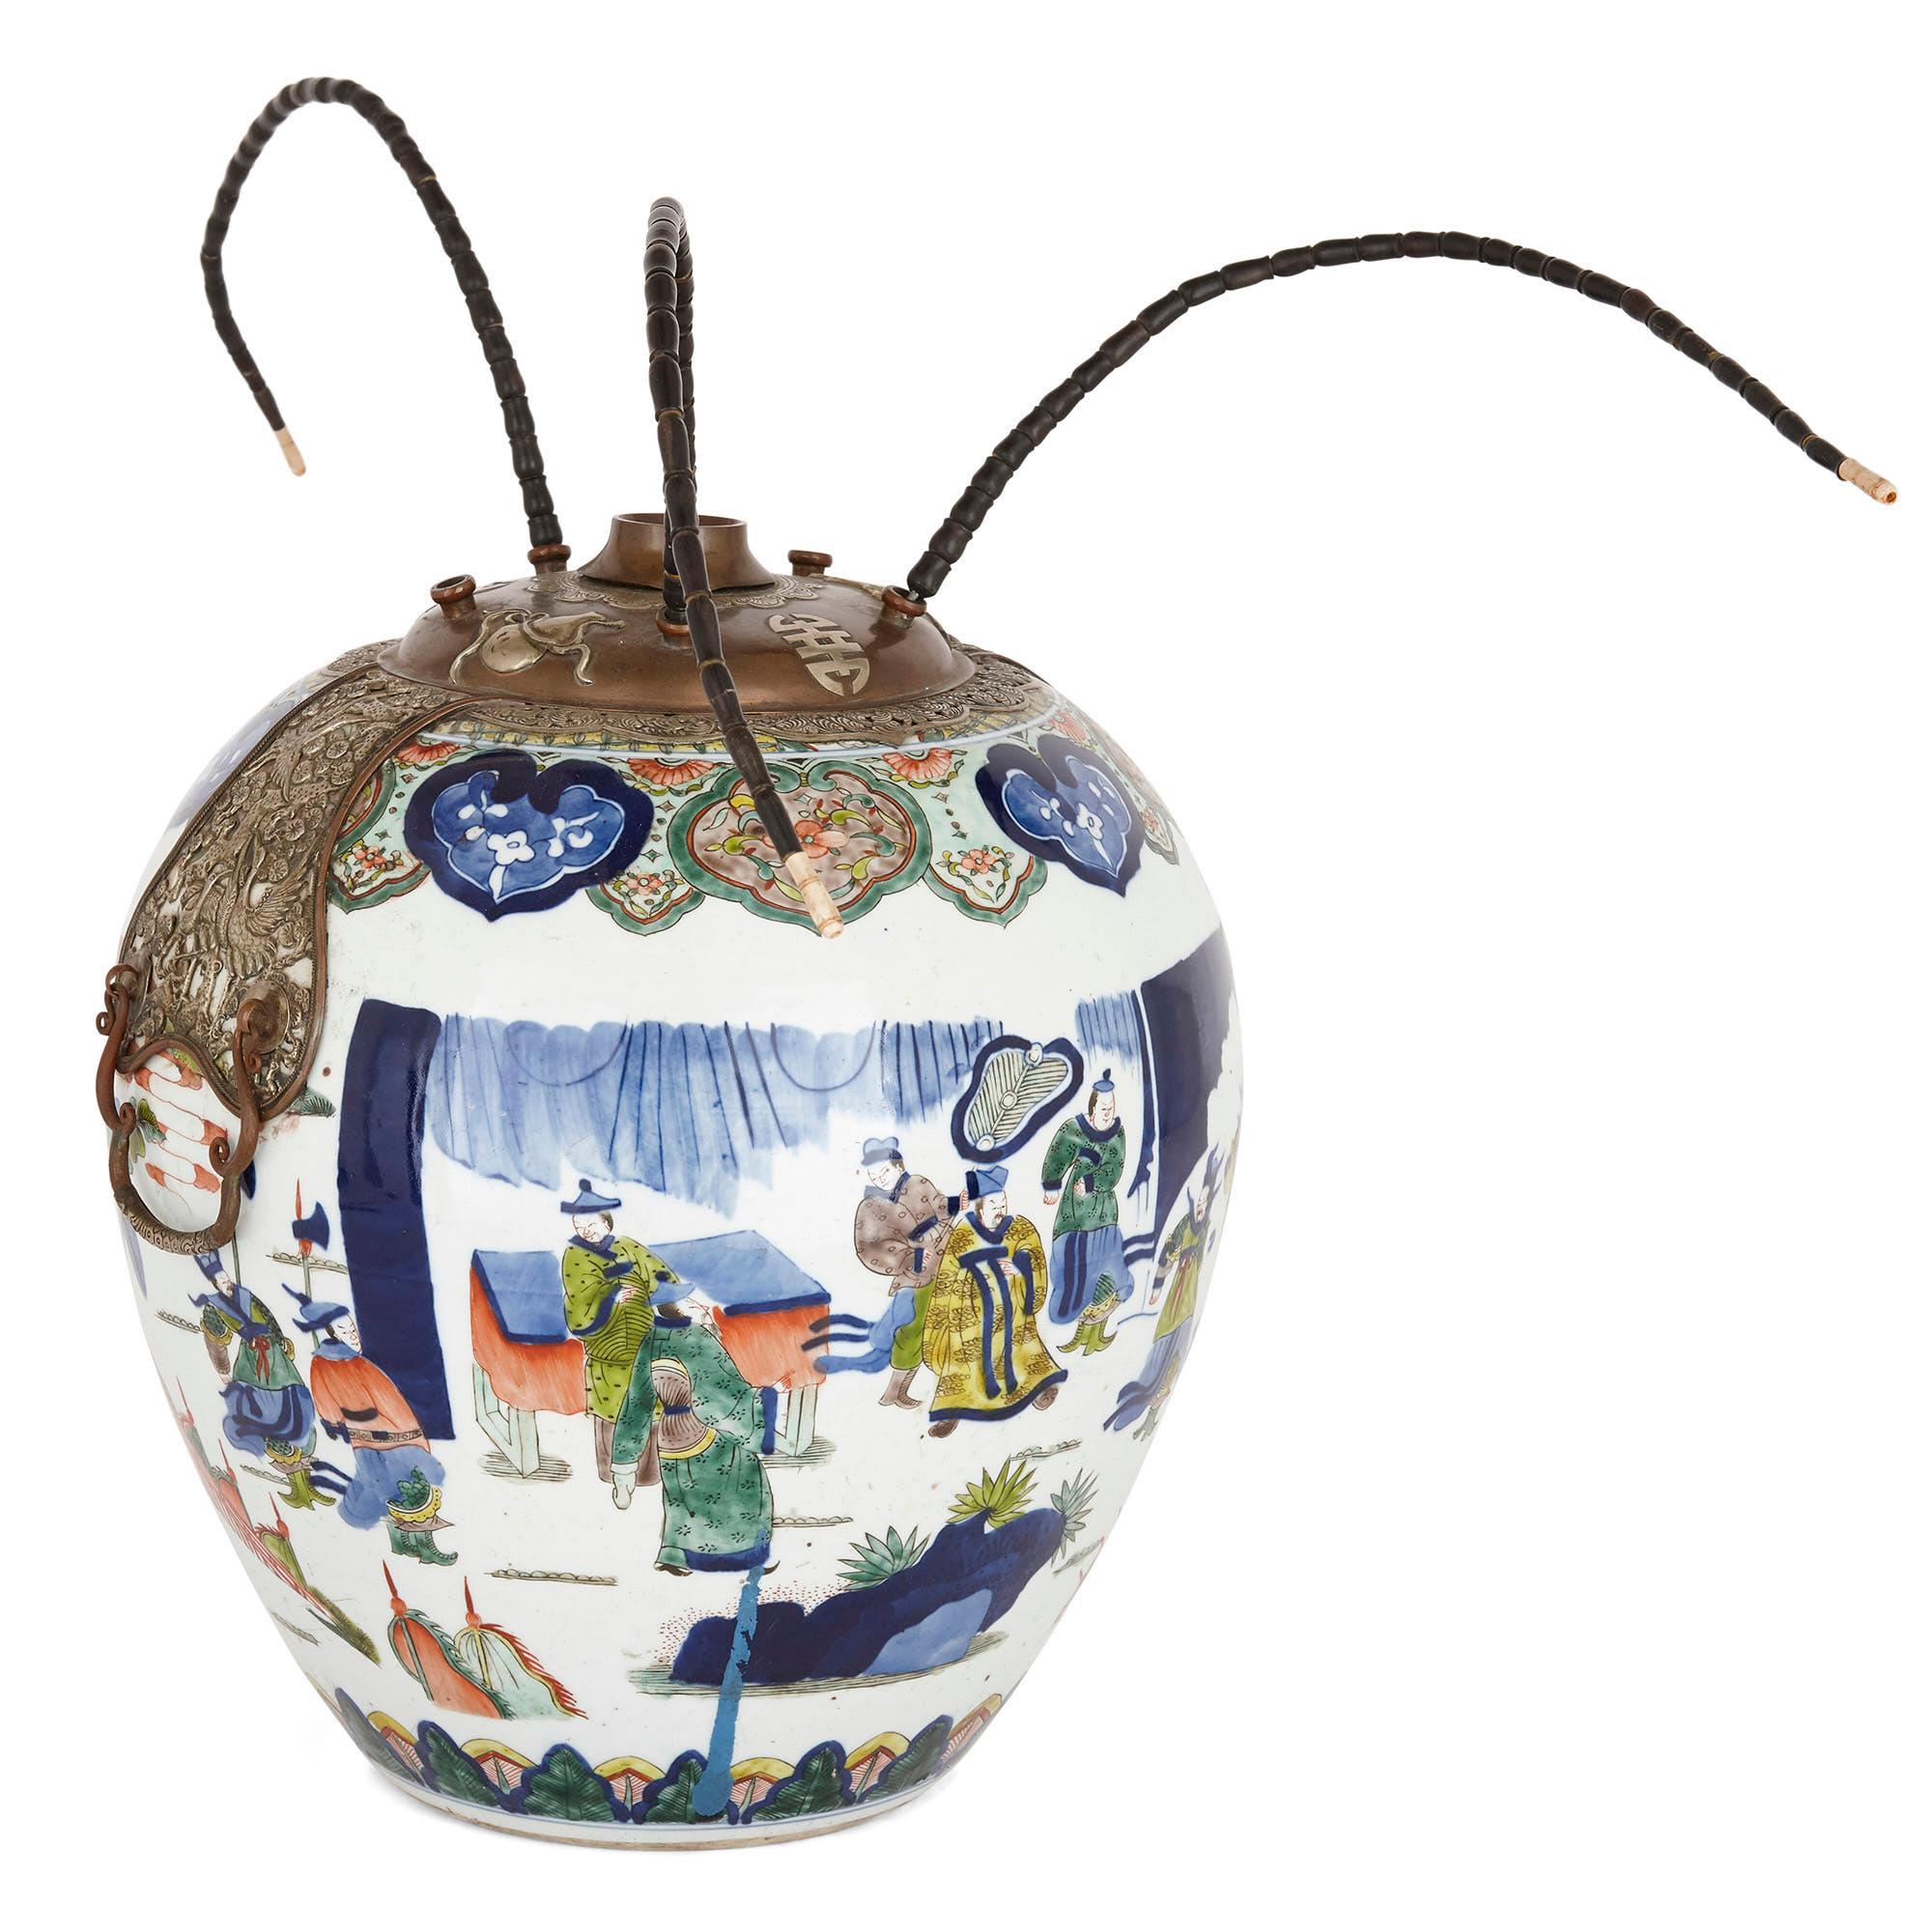 Chinesischer Opiumkrug aus Porzellan, 19. Jahrhundert 
Porzellan, 19. Jahrhundert 
Maße: Höhe 38cm, Durchmesser 35cm

Dieser Opiumkrug aus Porzellan aus dem 19. Jahrhundert hat die Form einer traditionellen Vase und ist im Wucai-Stil des 17. Der